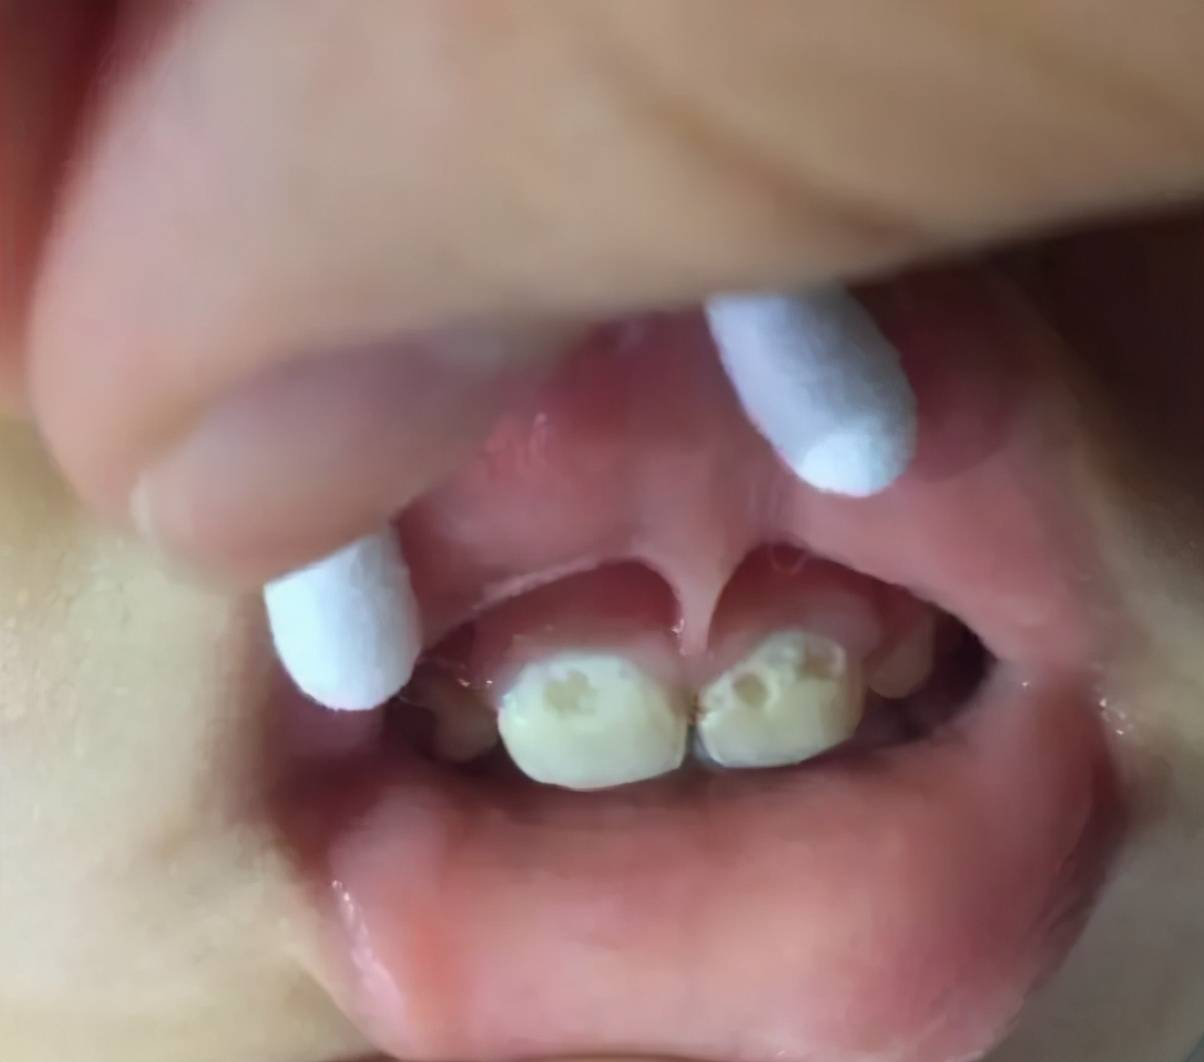 07乳牙牙缝大,换牙后会有改善吗? 正常来说,会的.